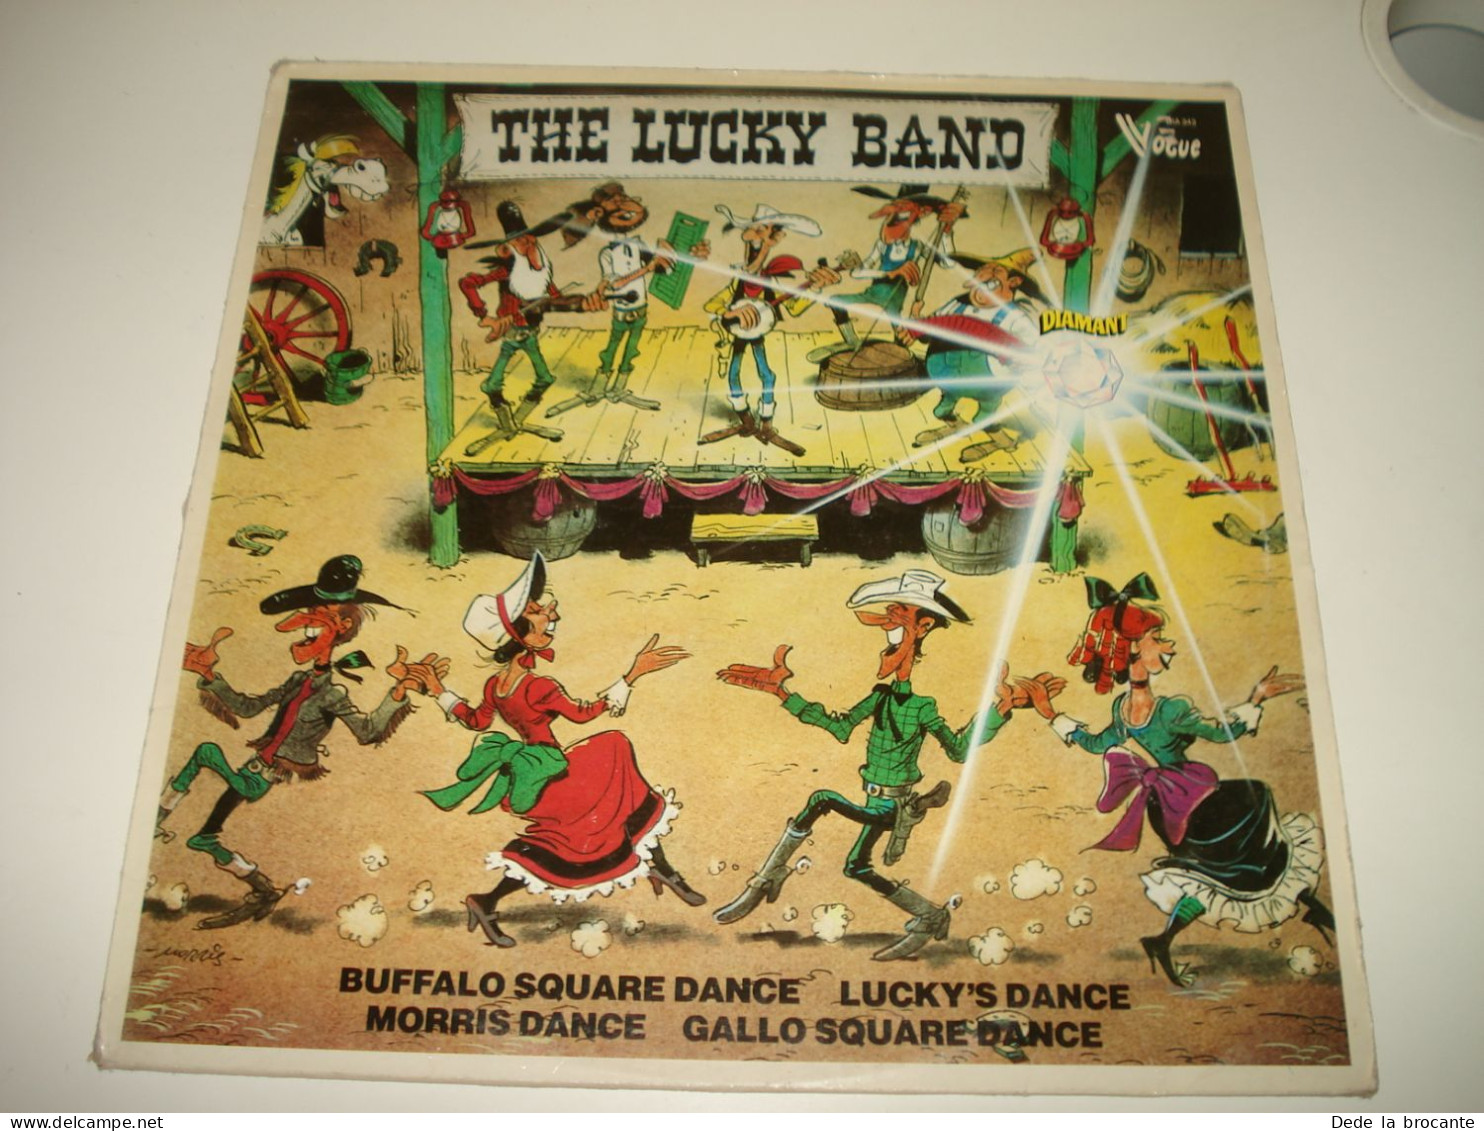 B13 / The Lucky Band – The Lucky Band - LP -  Morris - DIA 343 - BE 19??  EX/EX - Schallplatten & CD